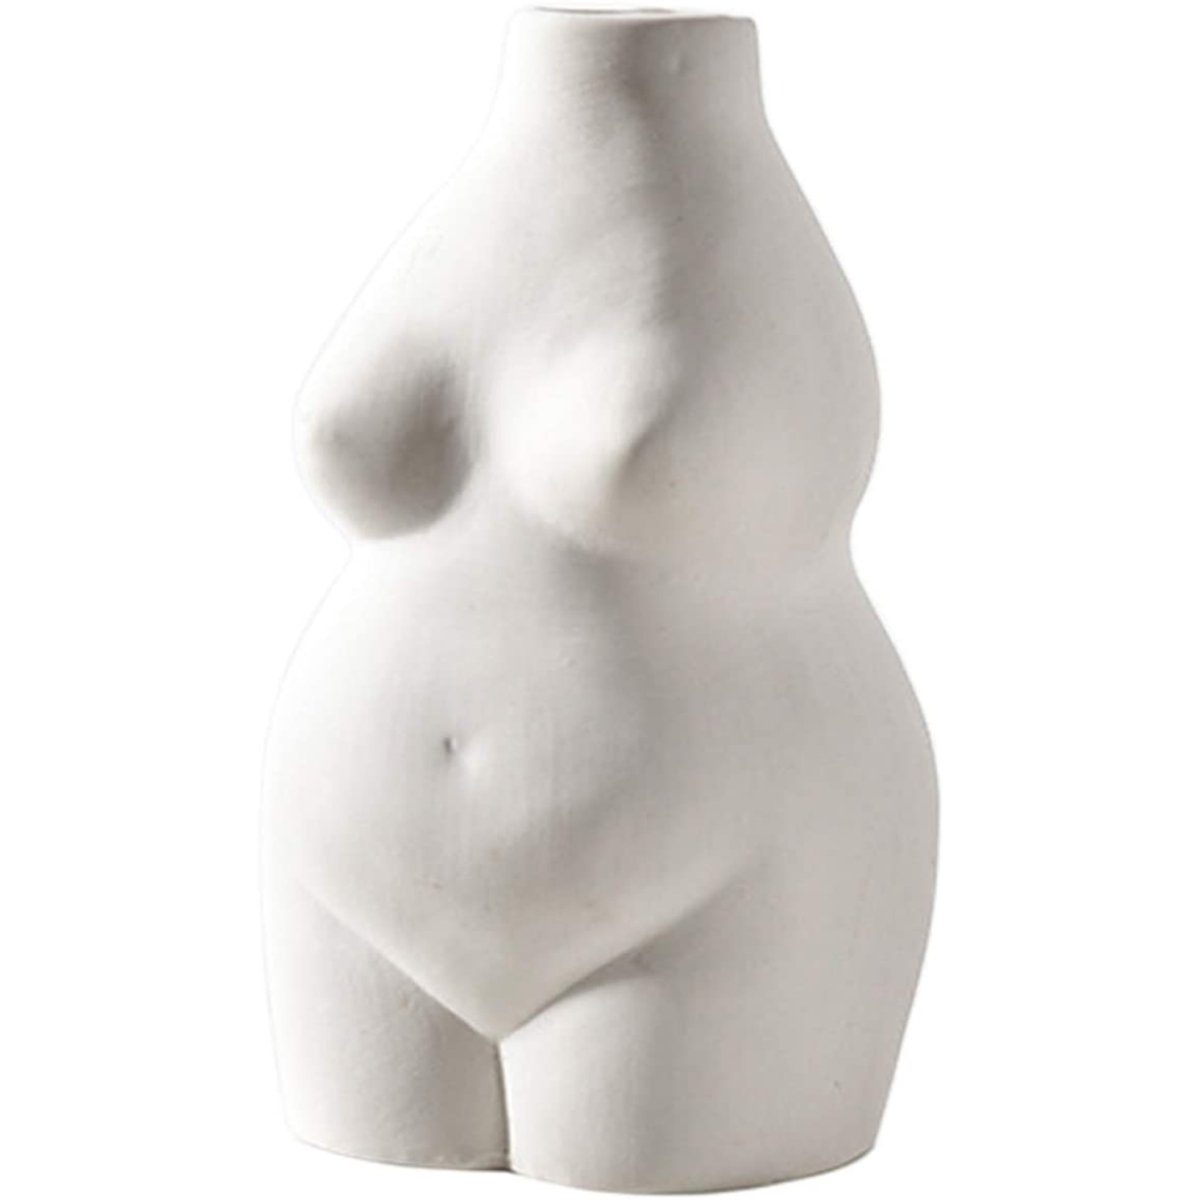 Jormftte Dekovase Weiblich Körper Vase Kunst Design,Keramik Blumentopf Statue,für Deko Beige